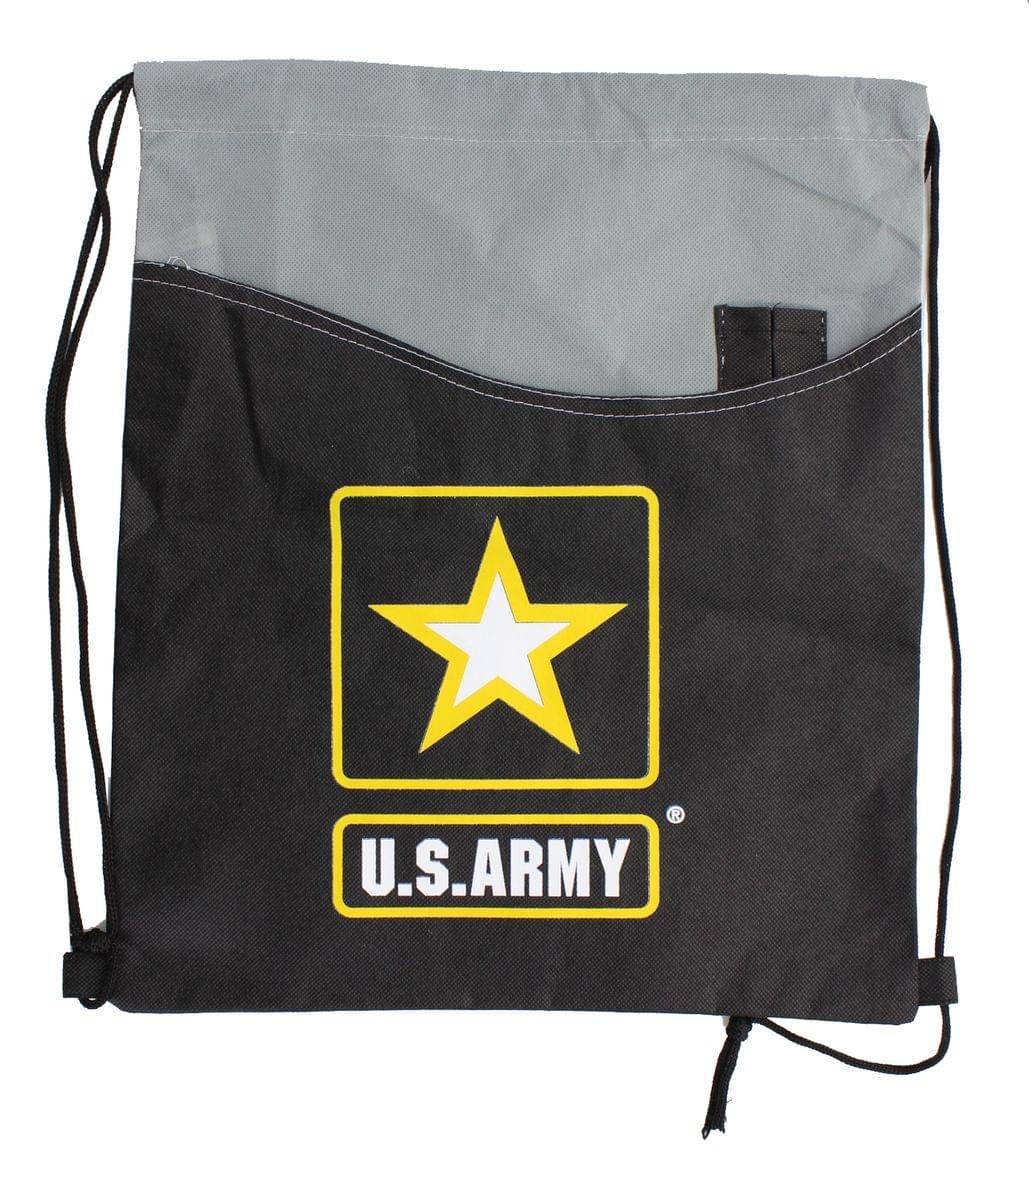 U.S. Army Drawstring Tote Bag